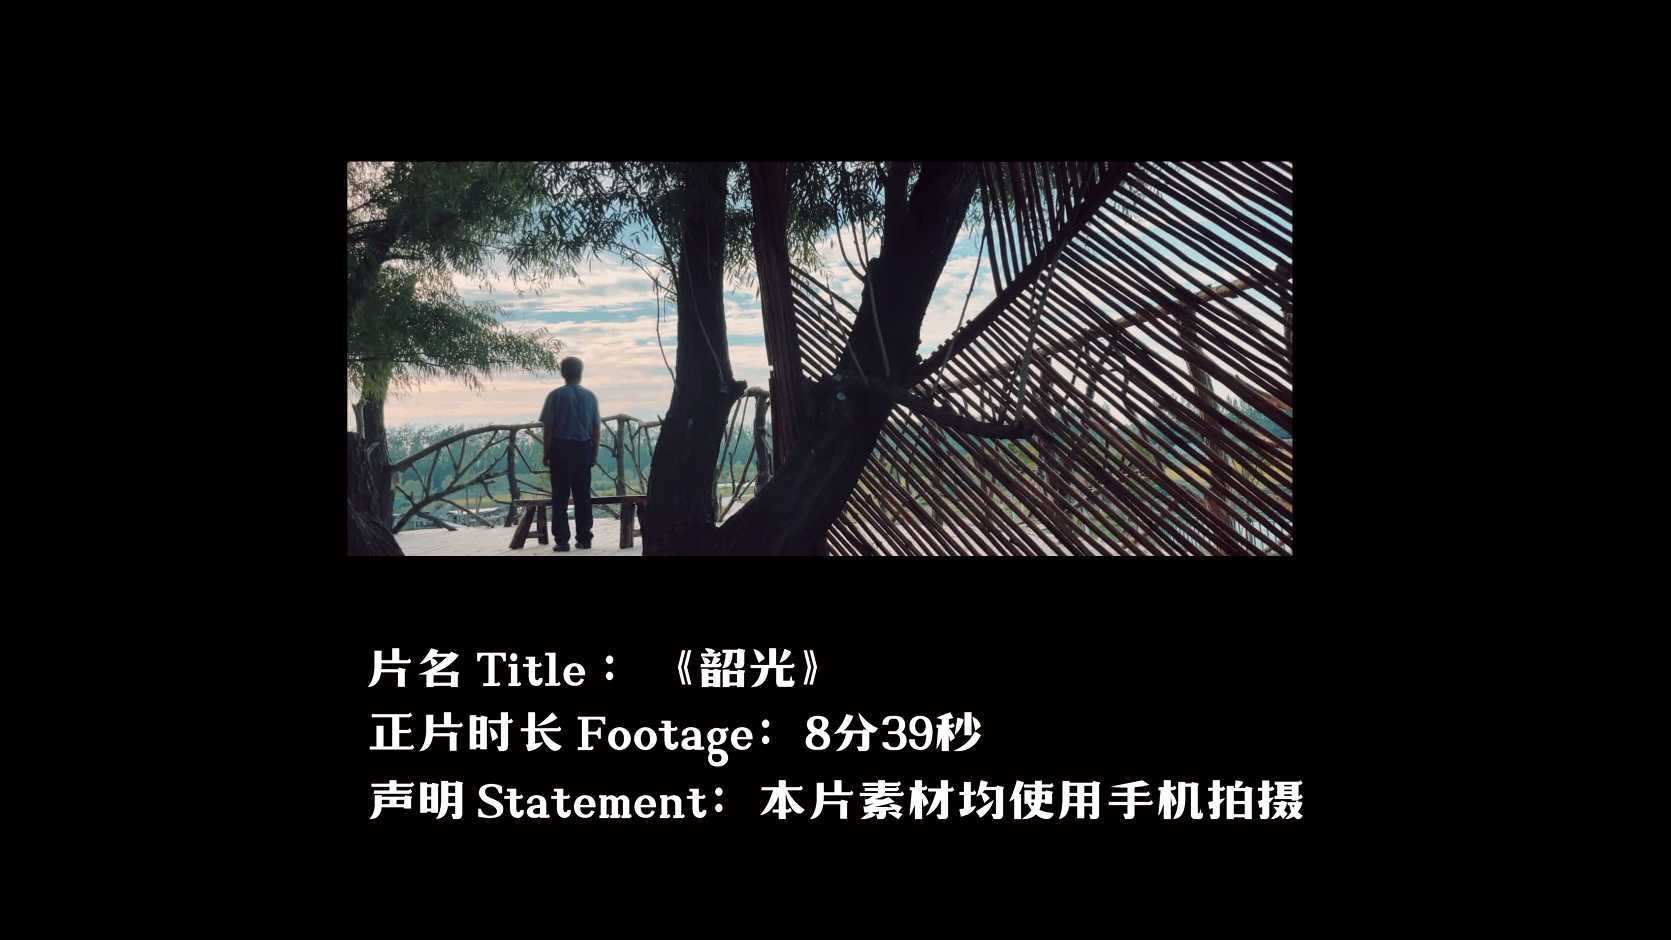 中国电影金鸡奖手机电影计划最佳镜头记录荣誉短片《韶光》